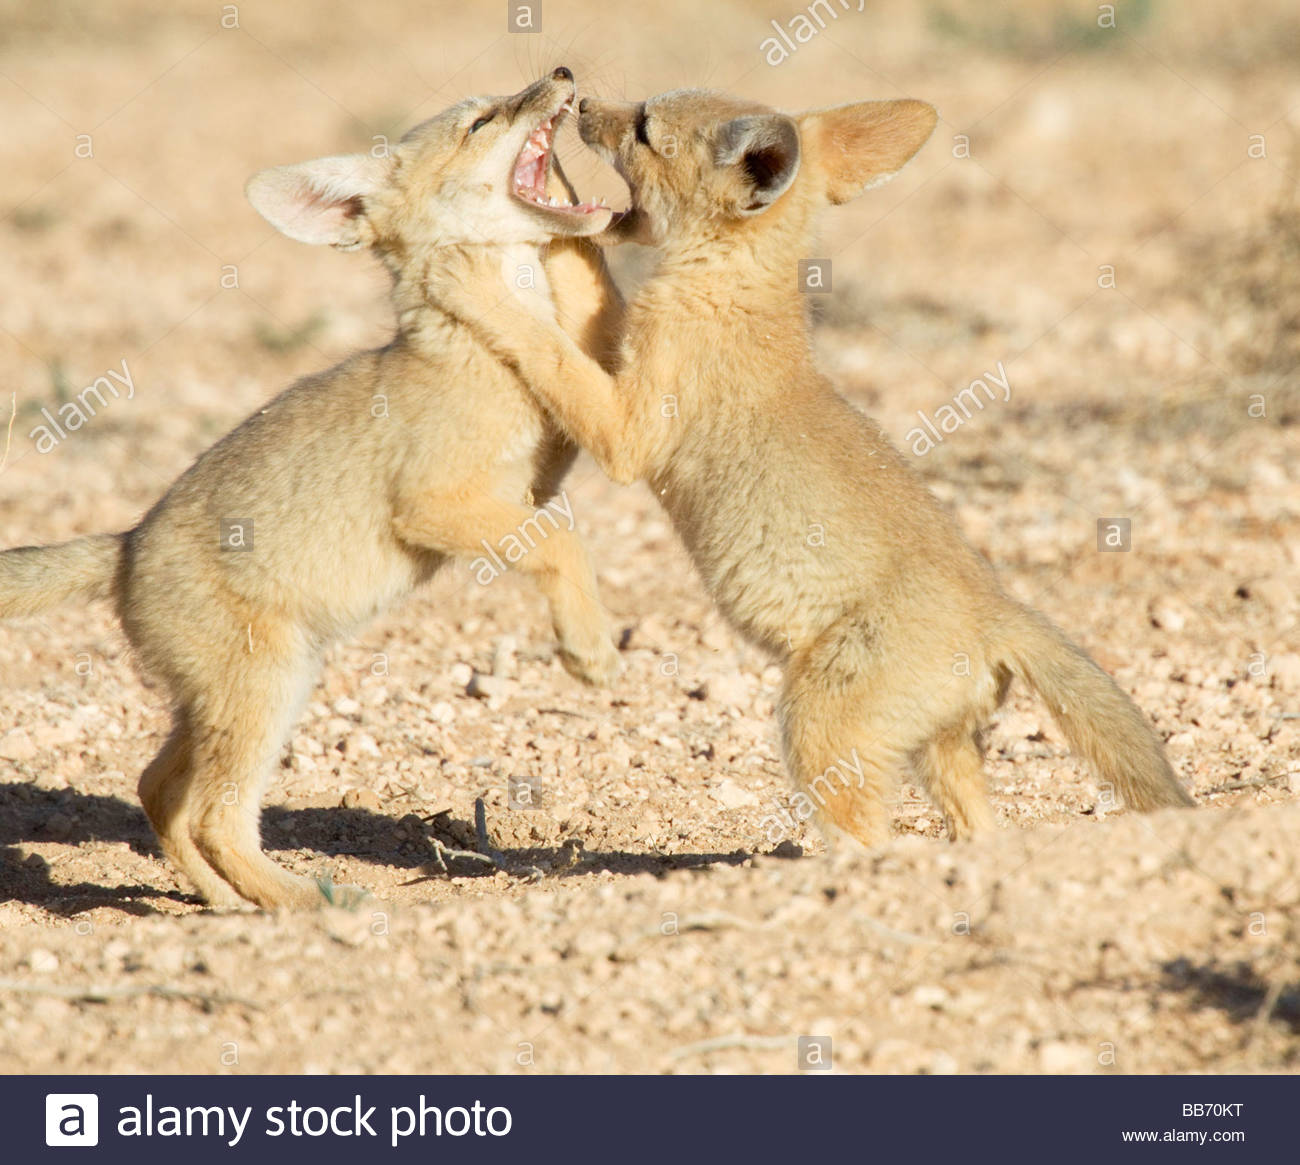 kit-foxes-vulpes-macrotis-pups-playing-r